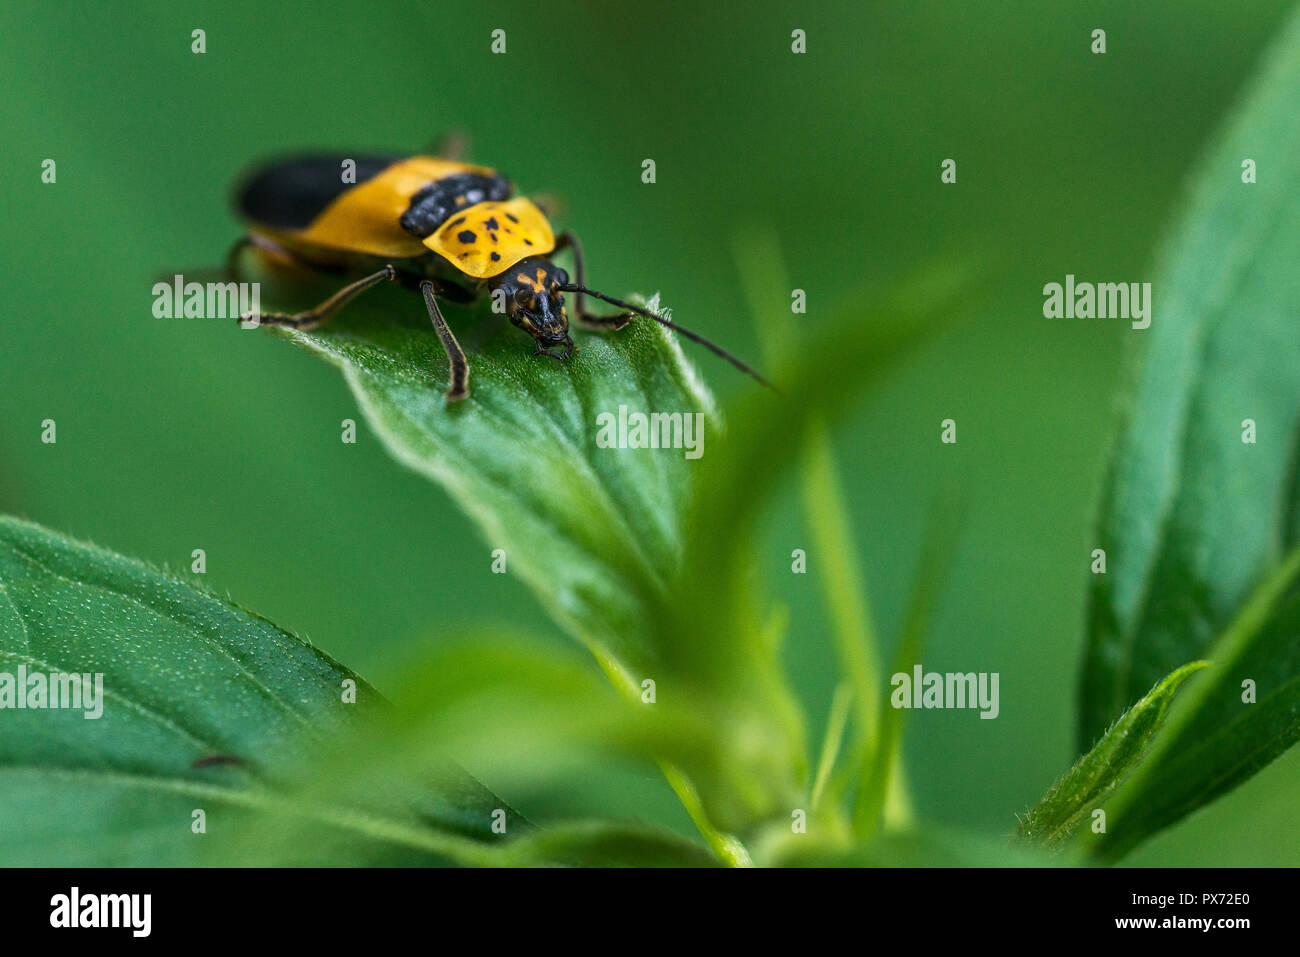 Insecte noir et jaune marche sur une feuille, le visage concentré Banque D'Images